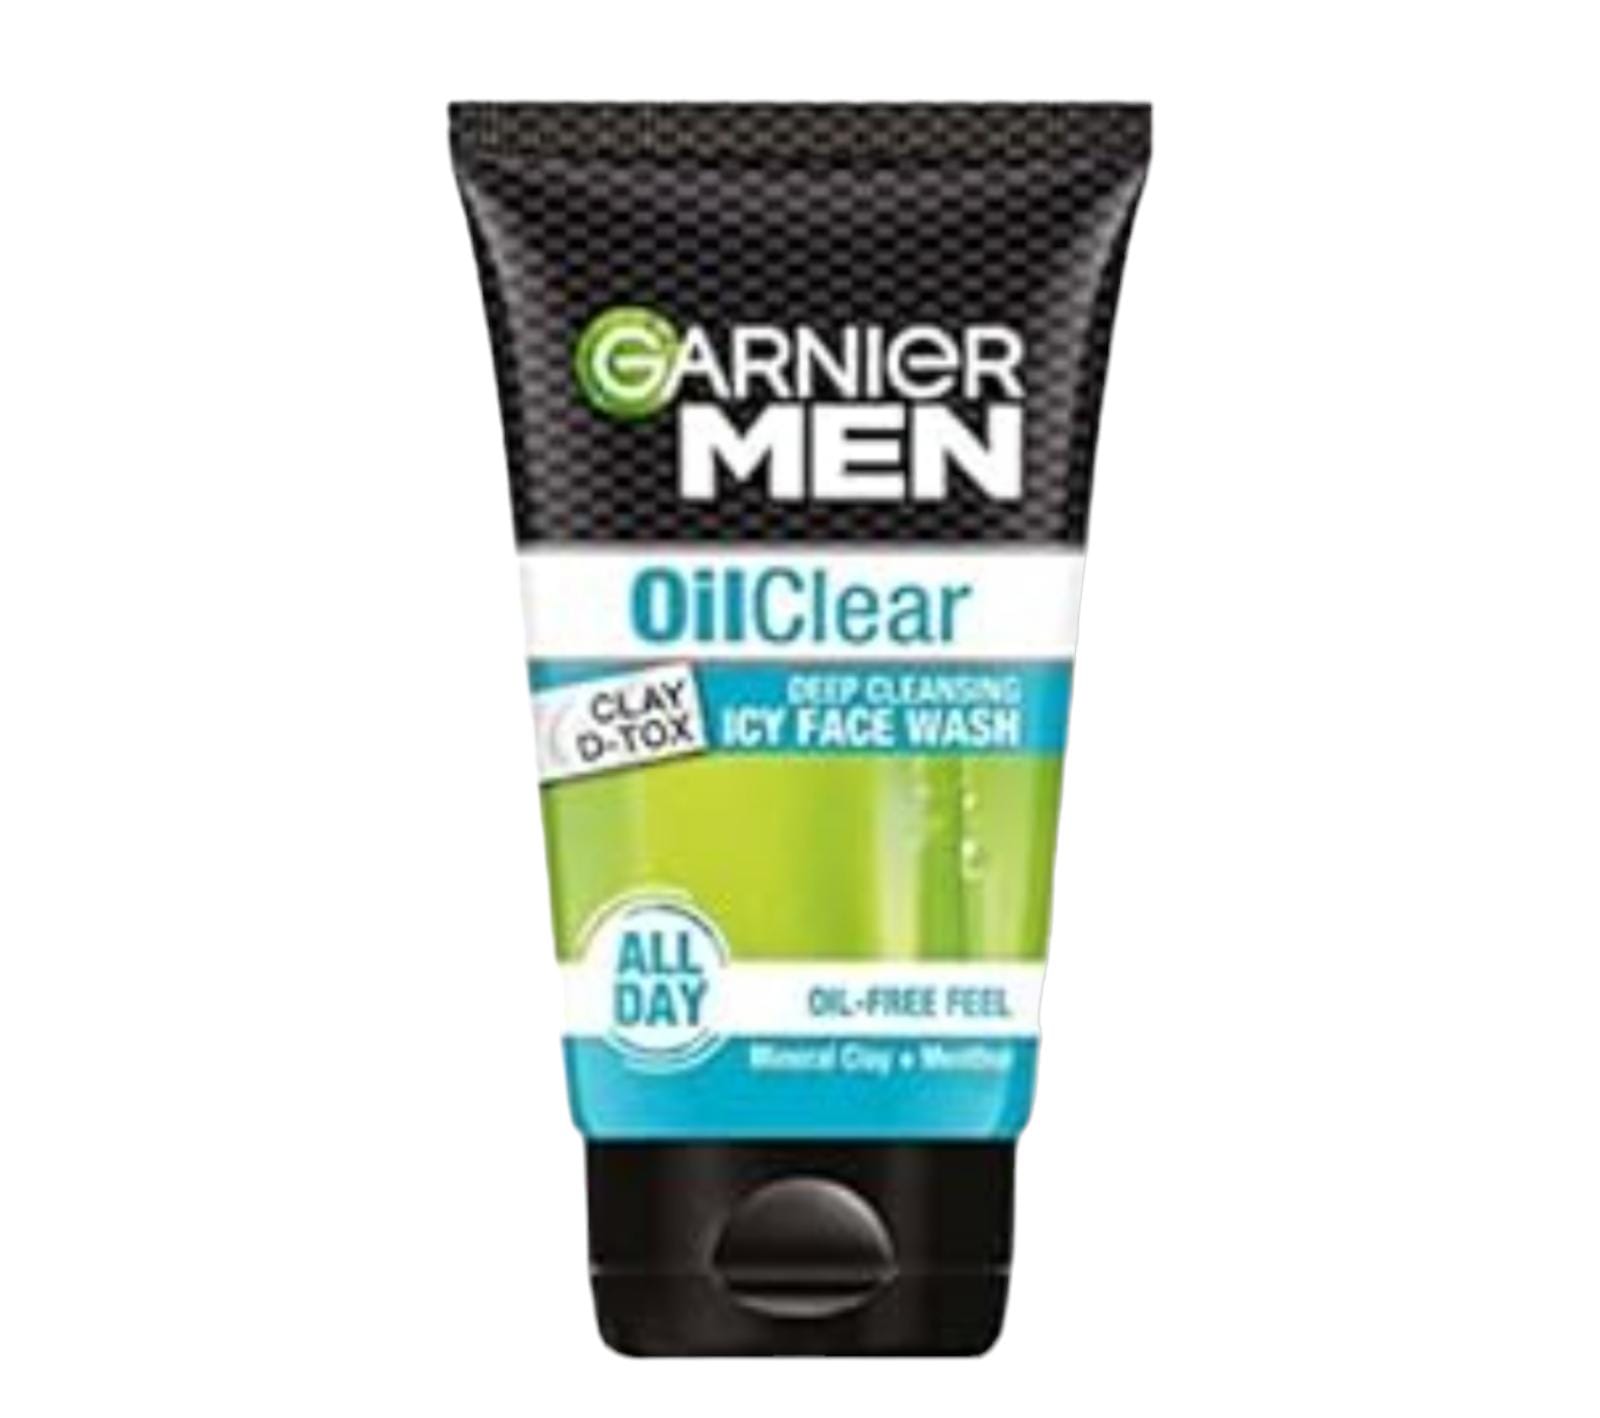 Garnier Men Oil Clear